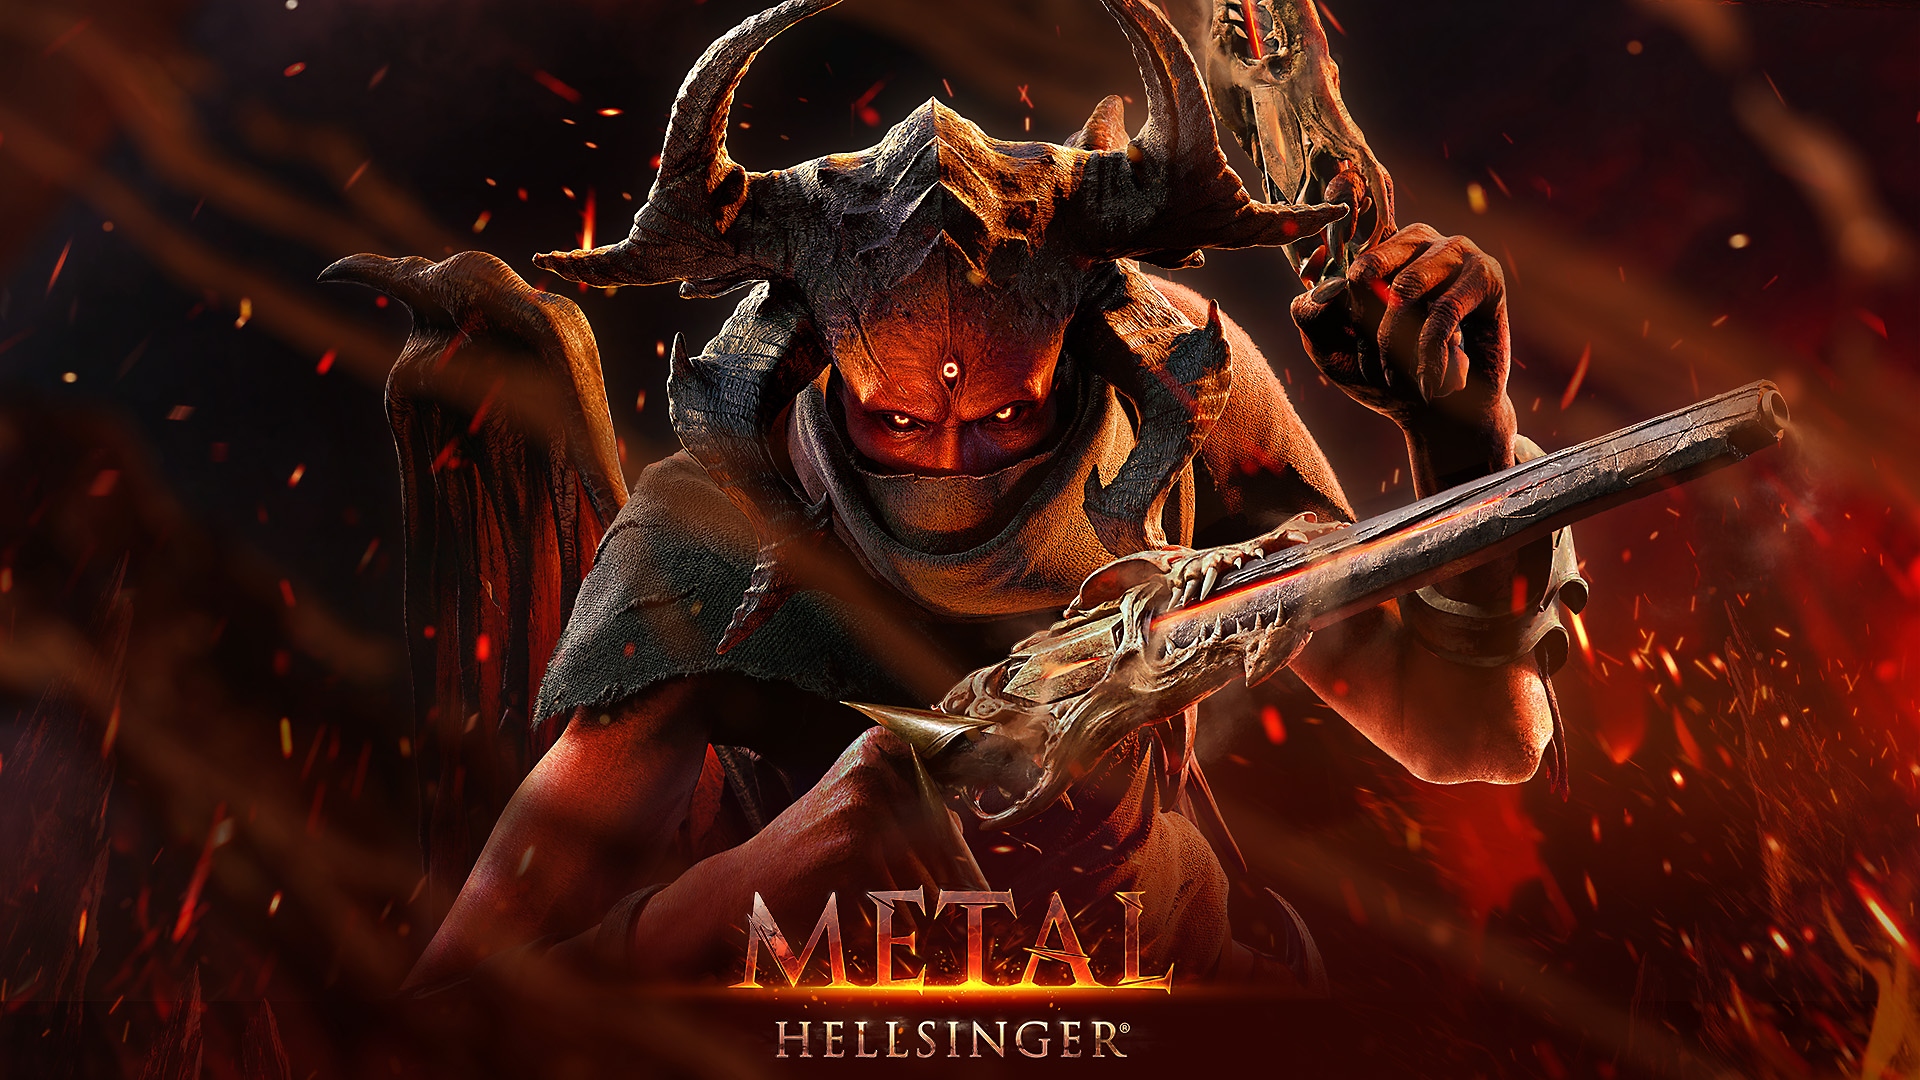 Metal Hellsinger - Launch Trailer | PS5 Games